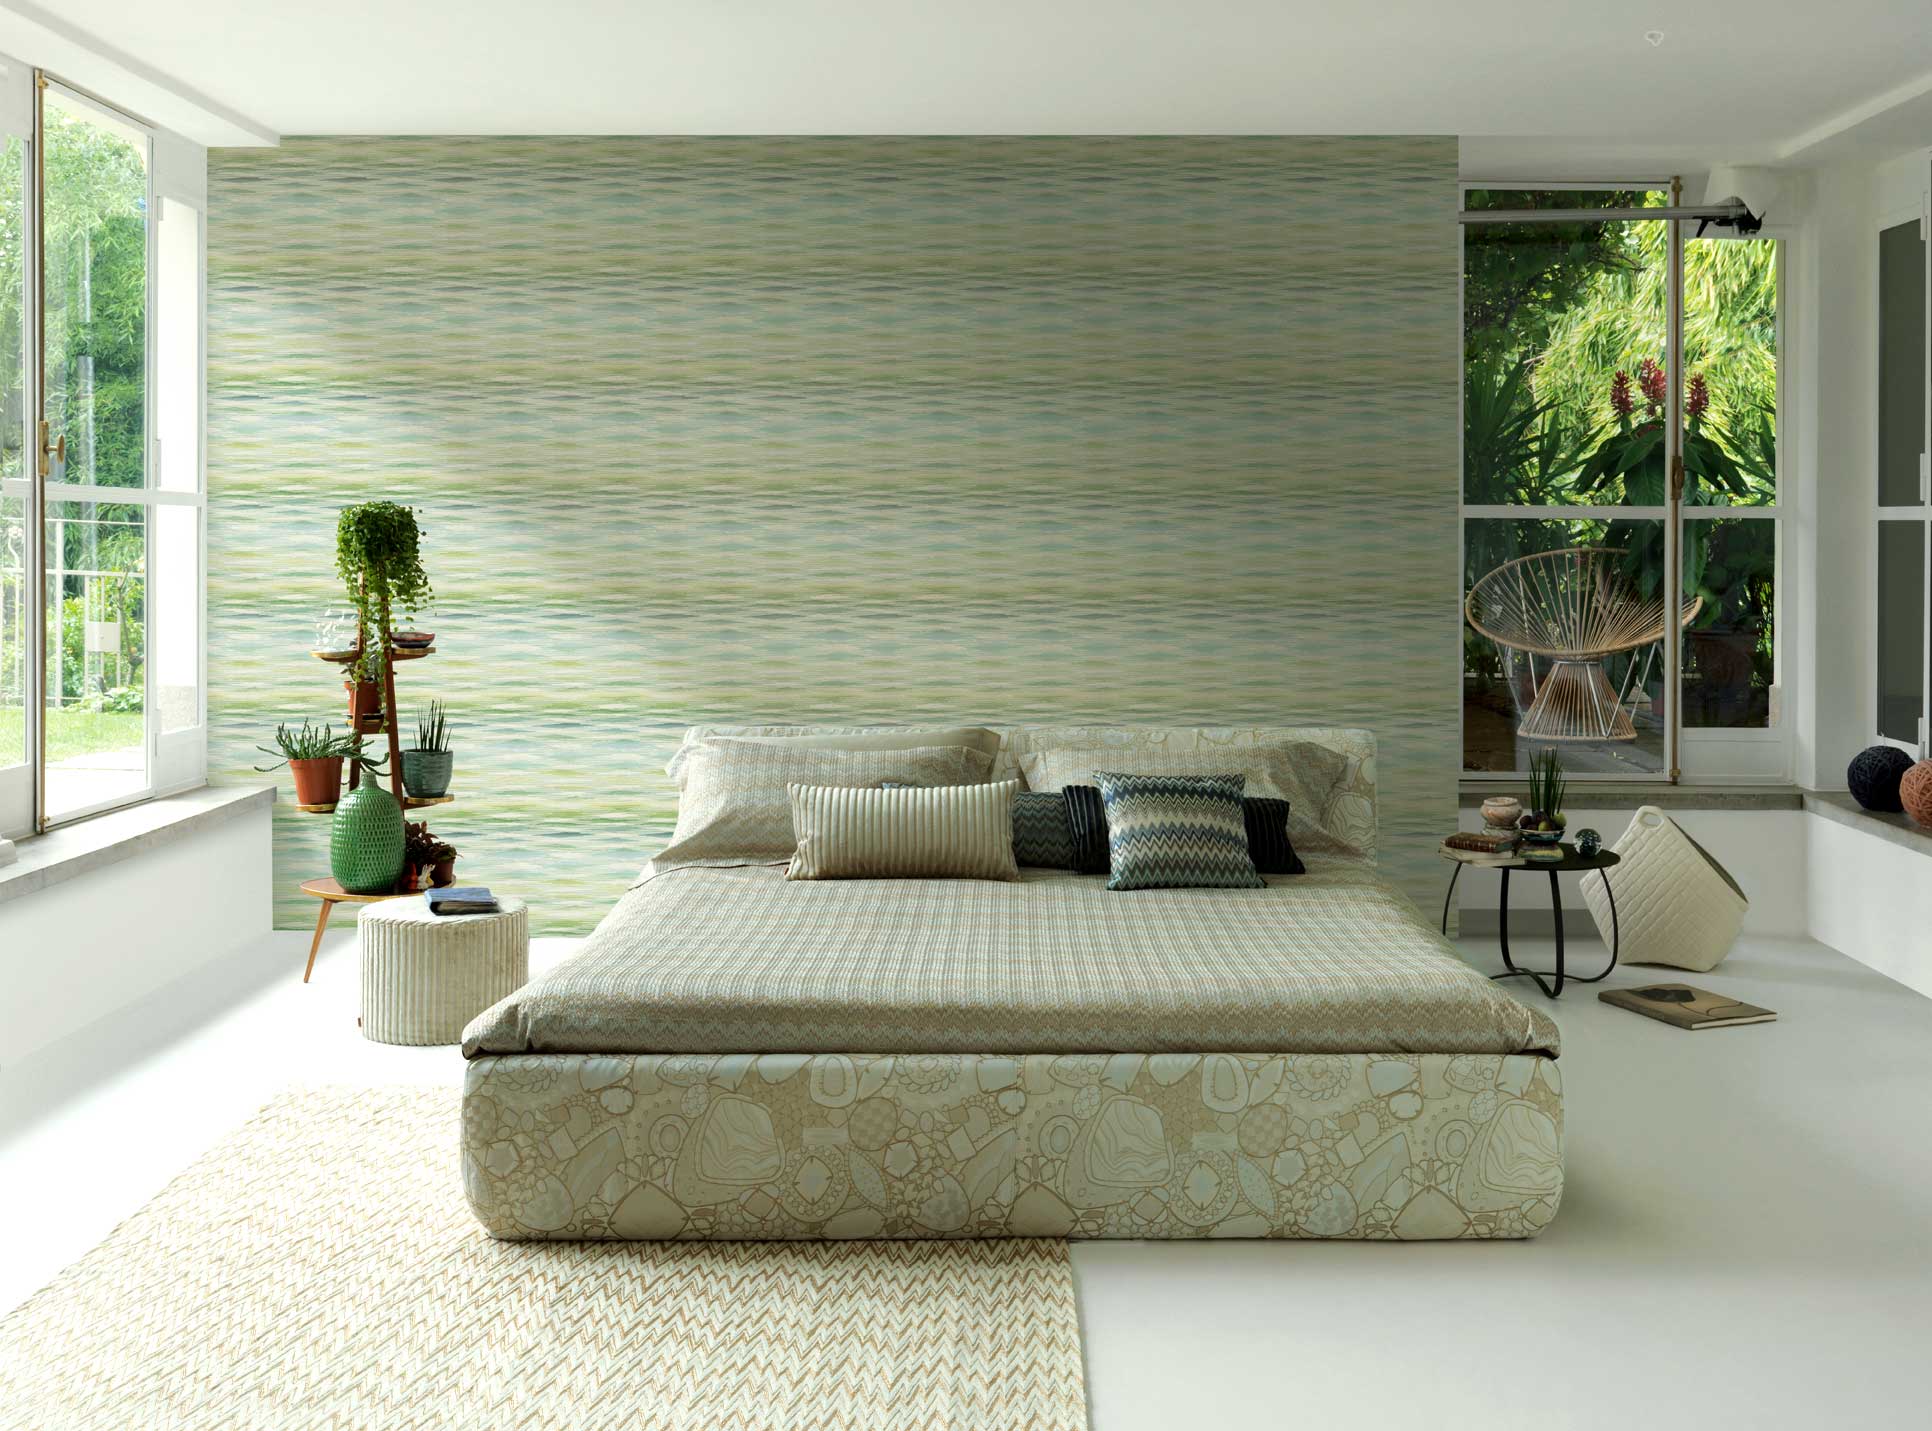 Schlafzimmer mit italienischer Tapete changierend gezackte Streifen